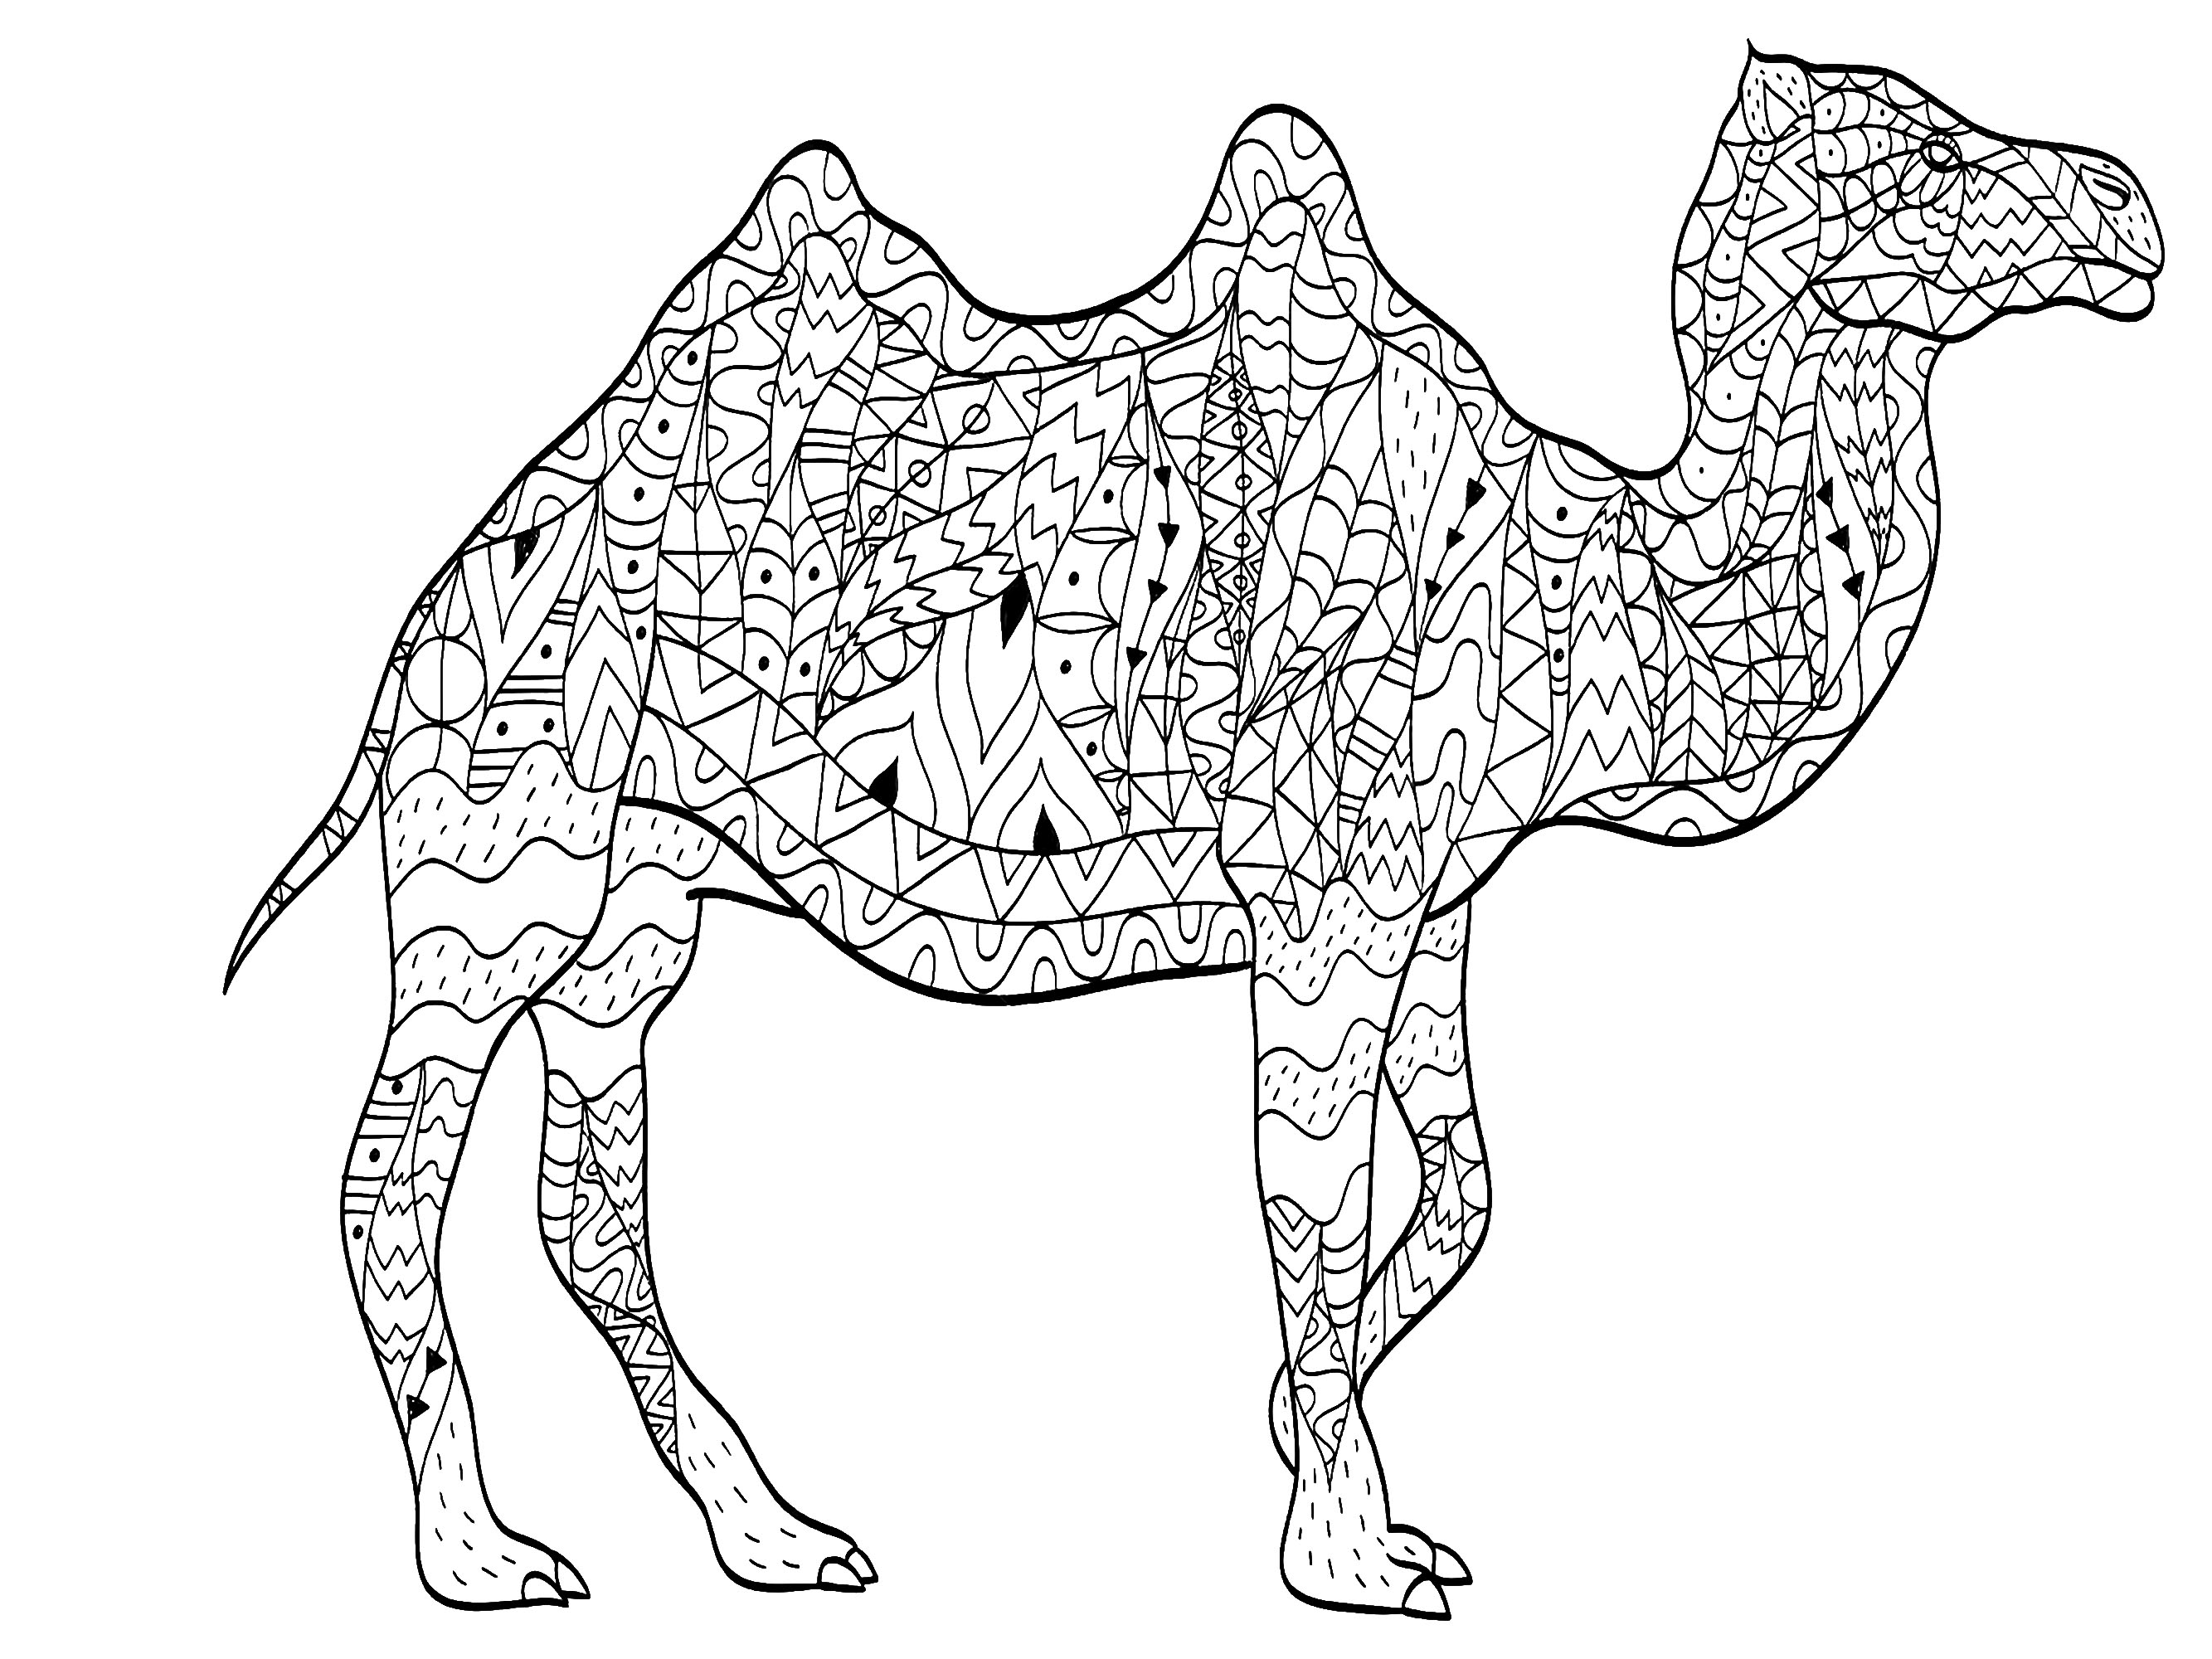 Un chameau majestueux dessiné avec des motifs variés et simples, Artiste : Viktoriia Panchenko   Source : 123rf